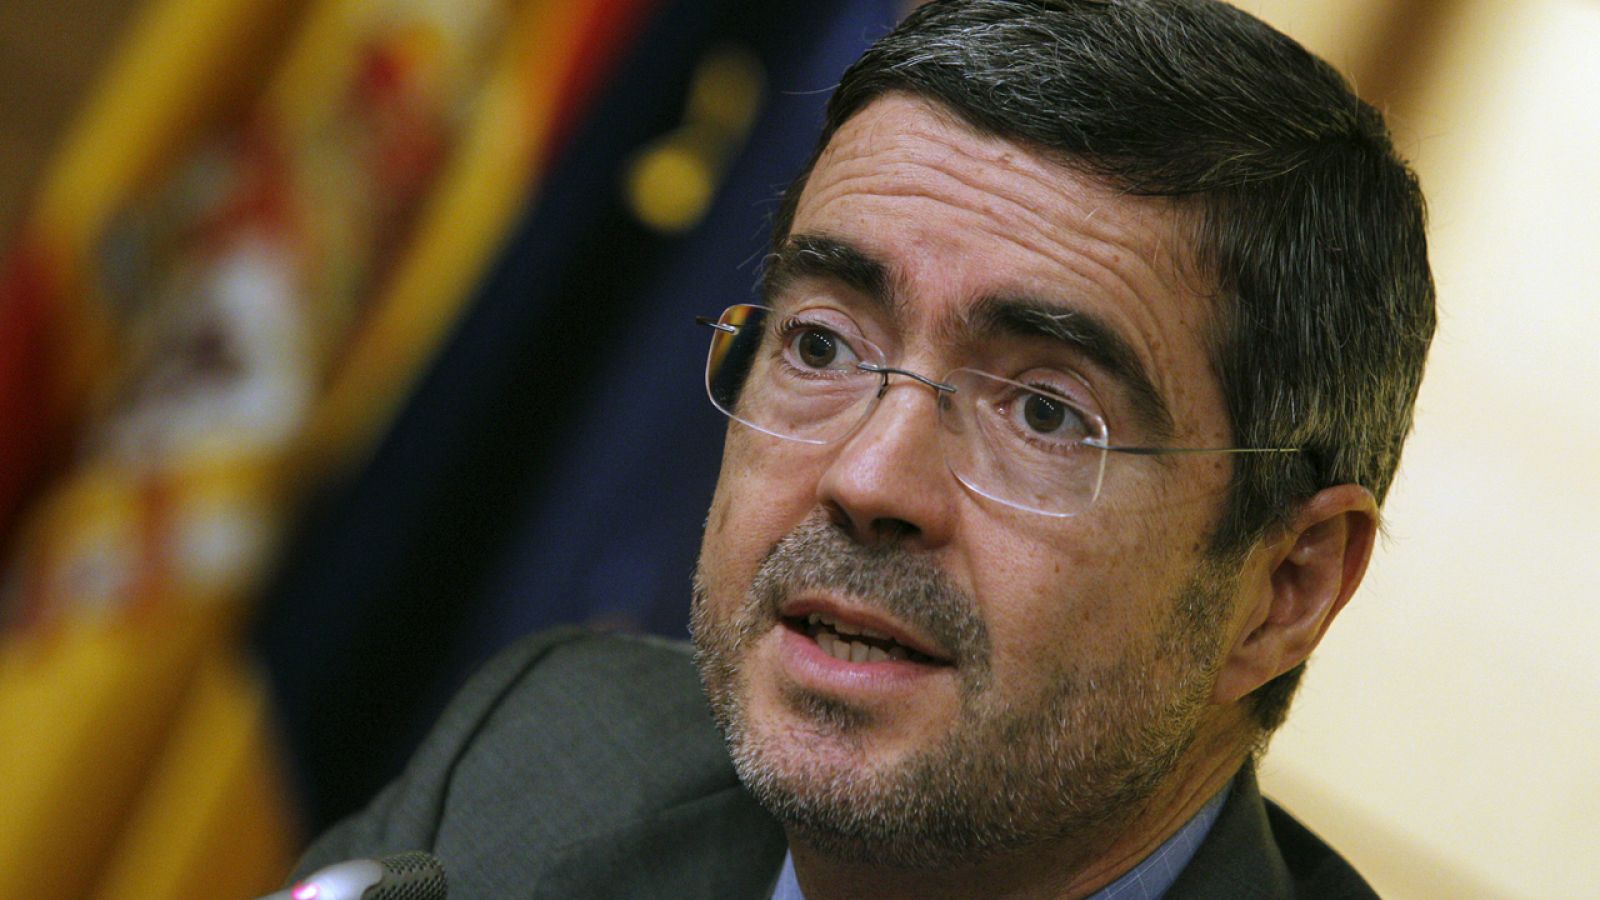 El secretario de Estado de Economía, Fernando Jiménez Latorre, en una imagen de archivo